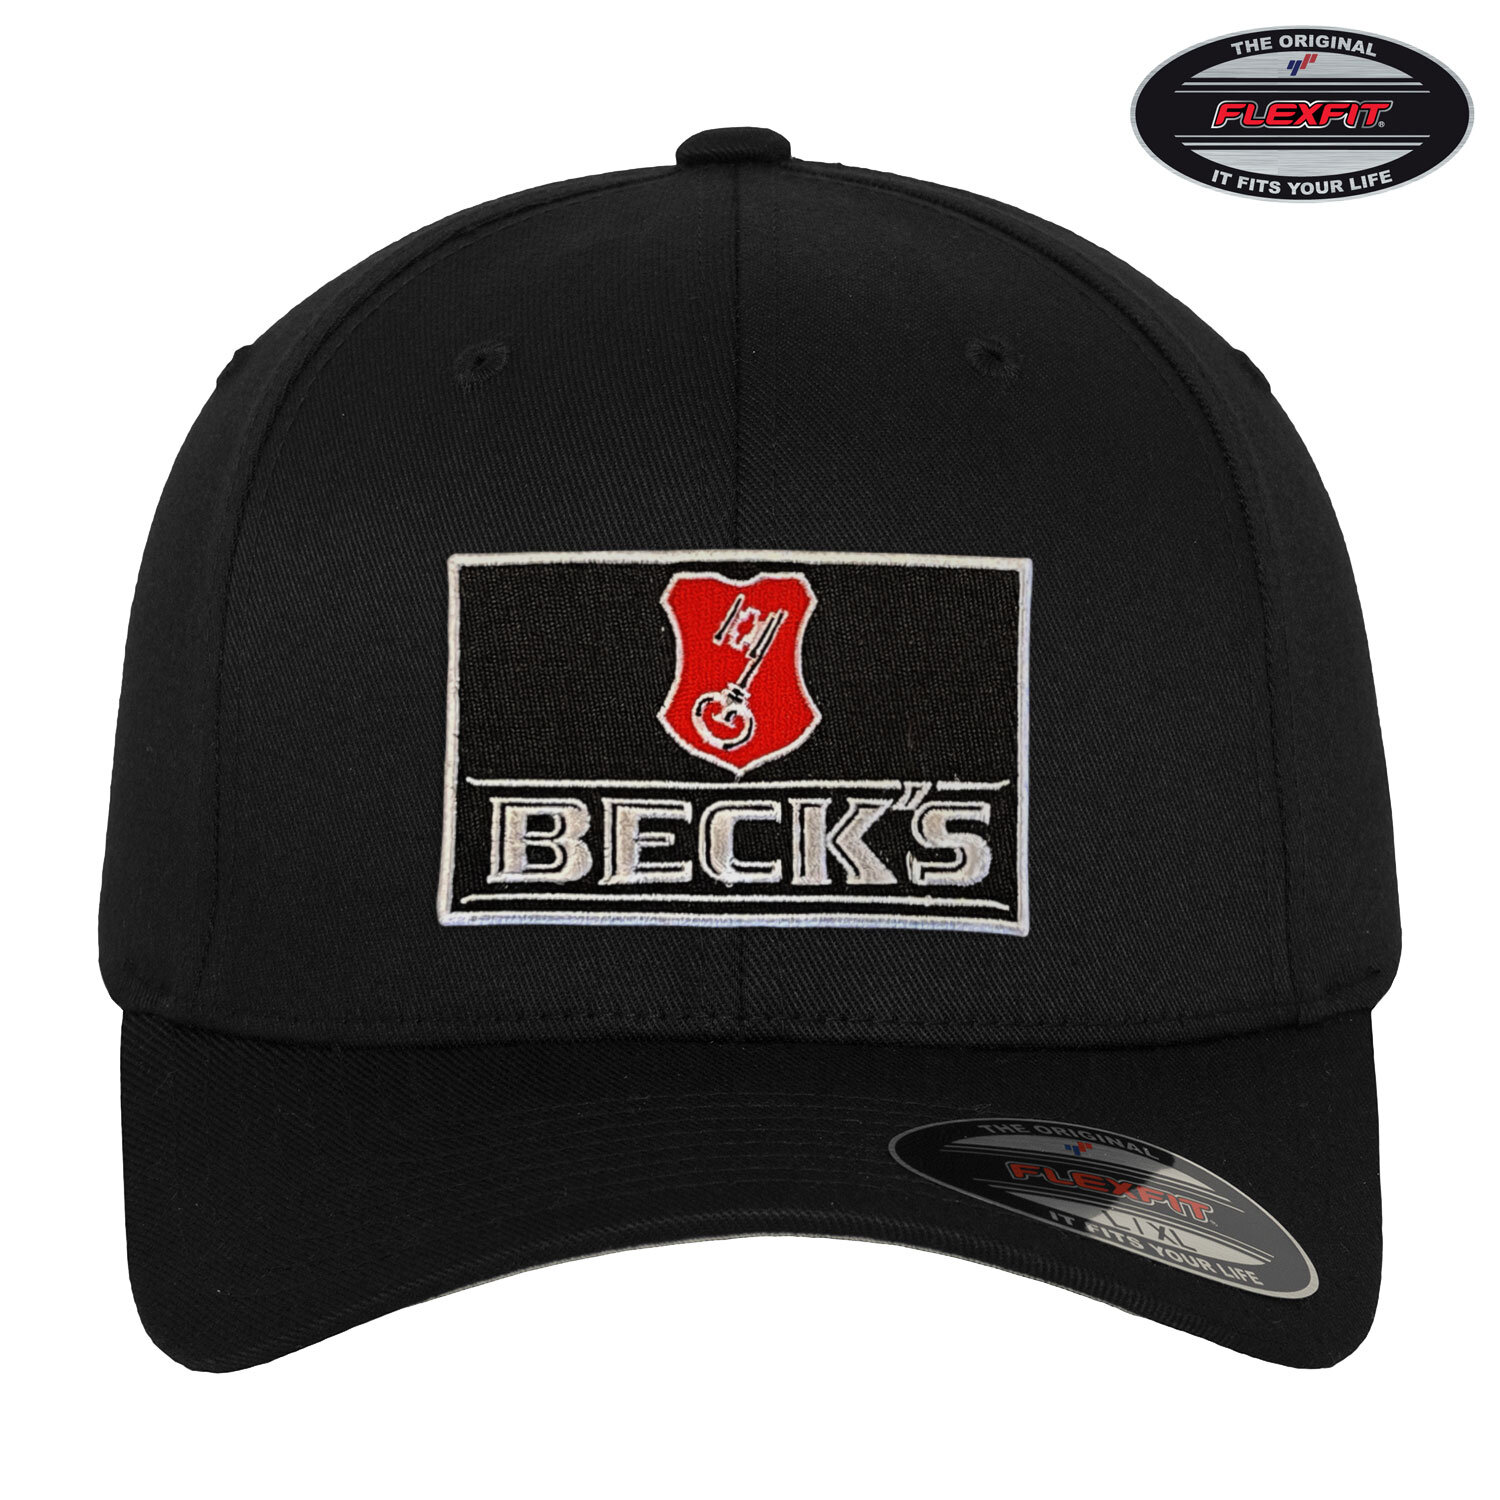 Beck's Beer Patch Flexfit Cap